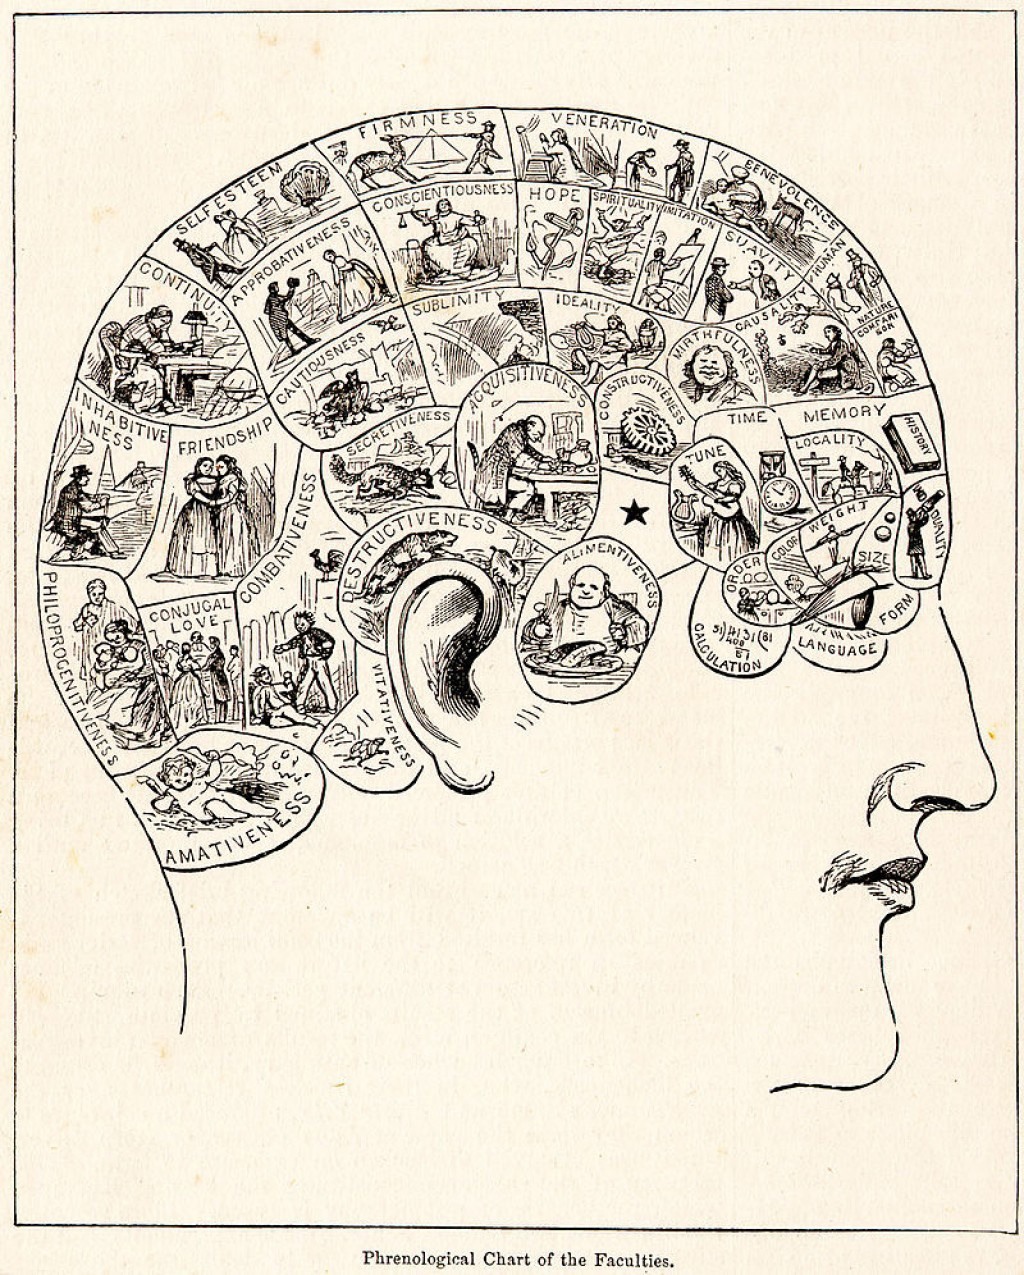 رسم بياني لعلم فراسة الدماغ، من موسوعة المعرفة العالمية عام 1883.